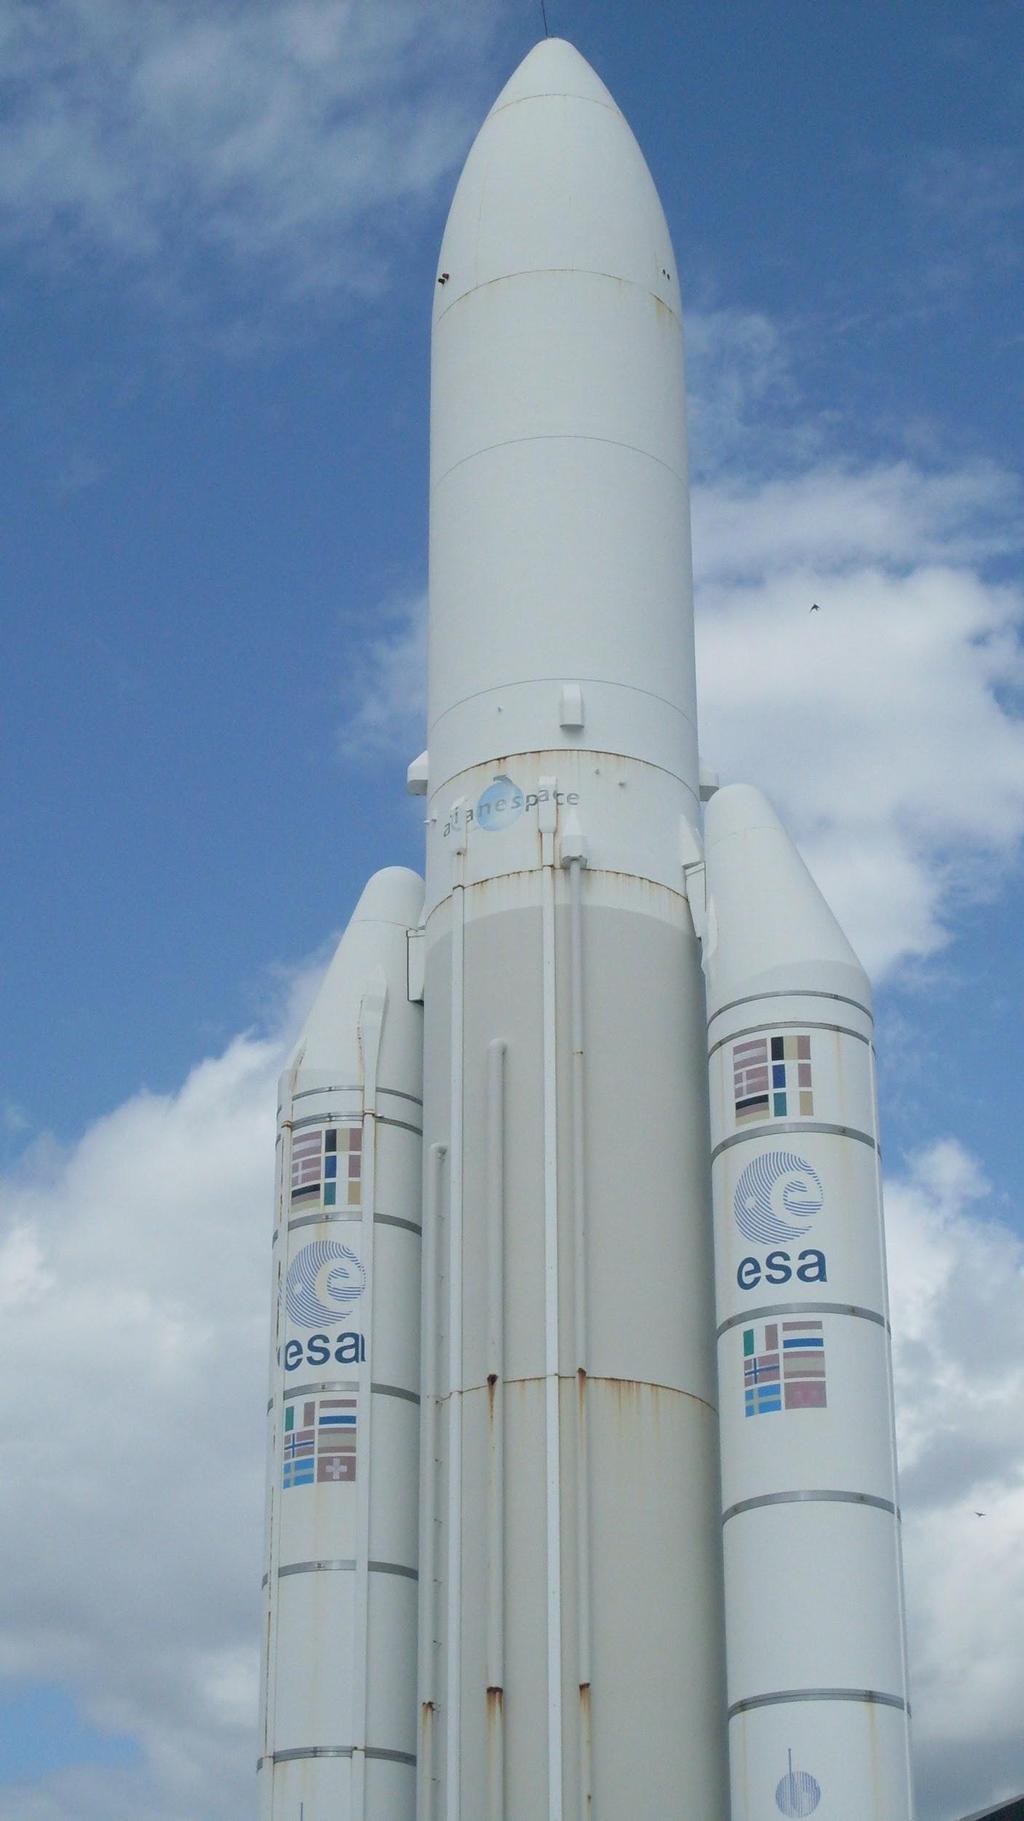 Rymdraketer och satelliter Ariane 5. Ariane skickas upp i rymden många gånger. Ariane har 2 krutraketer- dom gör så att man åker snabbare. Ariane väger 8,2 ton. Ariane är 59 meter.